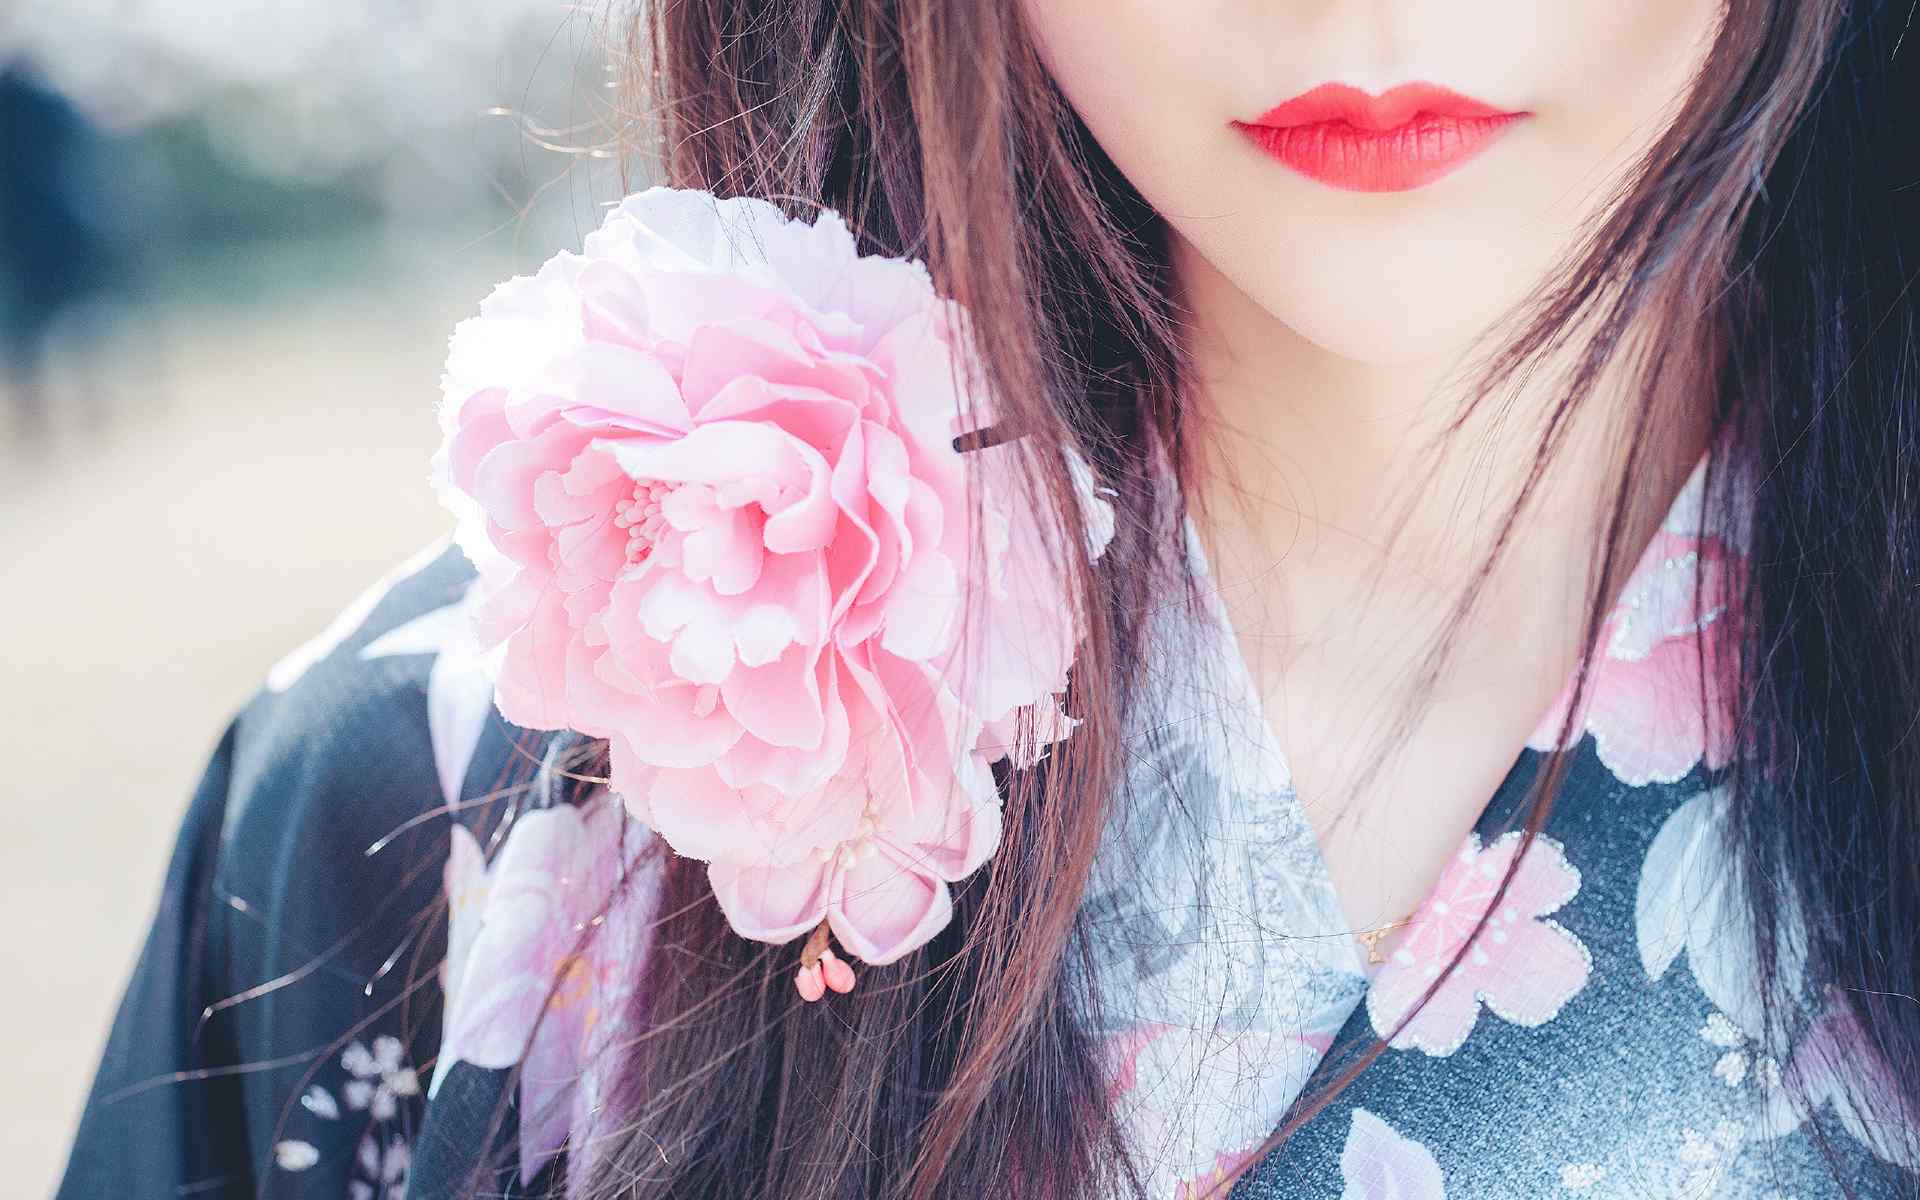 日本美女壁纸甜美大眼和服美女唯美高清桌面壁纸性感美腿美女制服艺术摄影极品诱惑